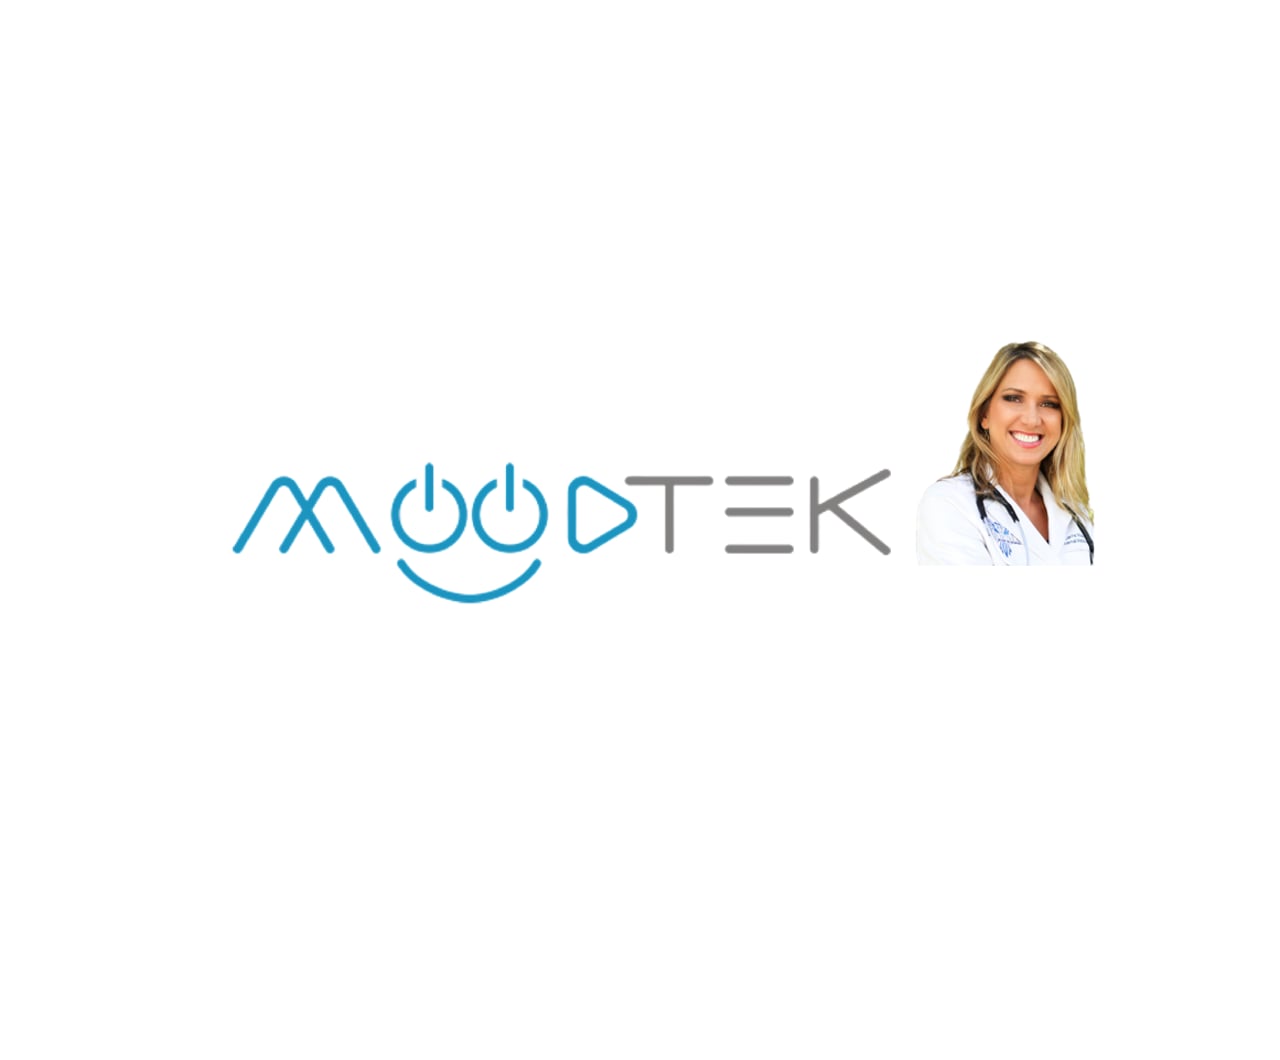 MOODTEK - Episode 03 - DR Madej